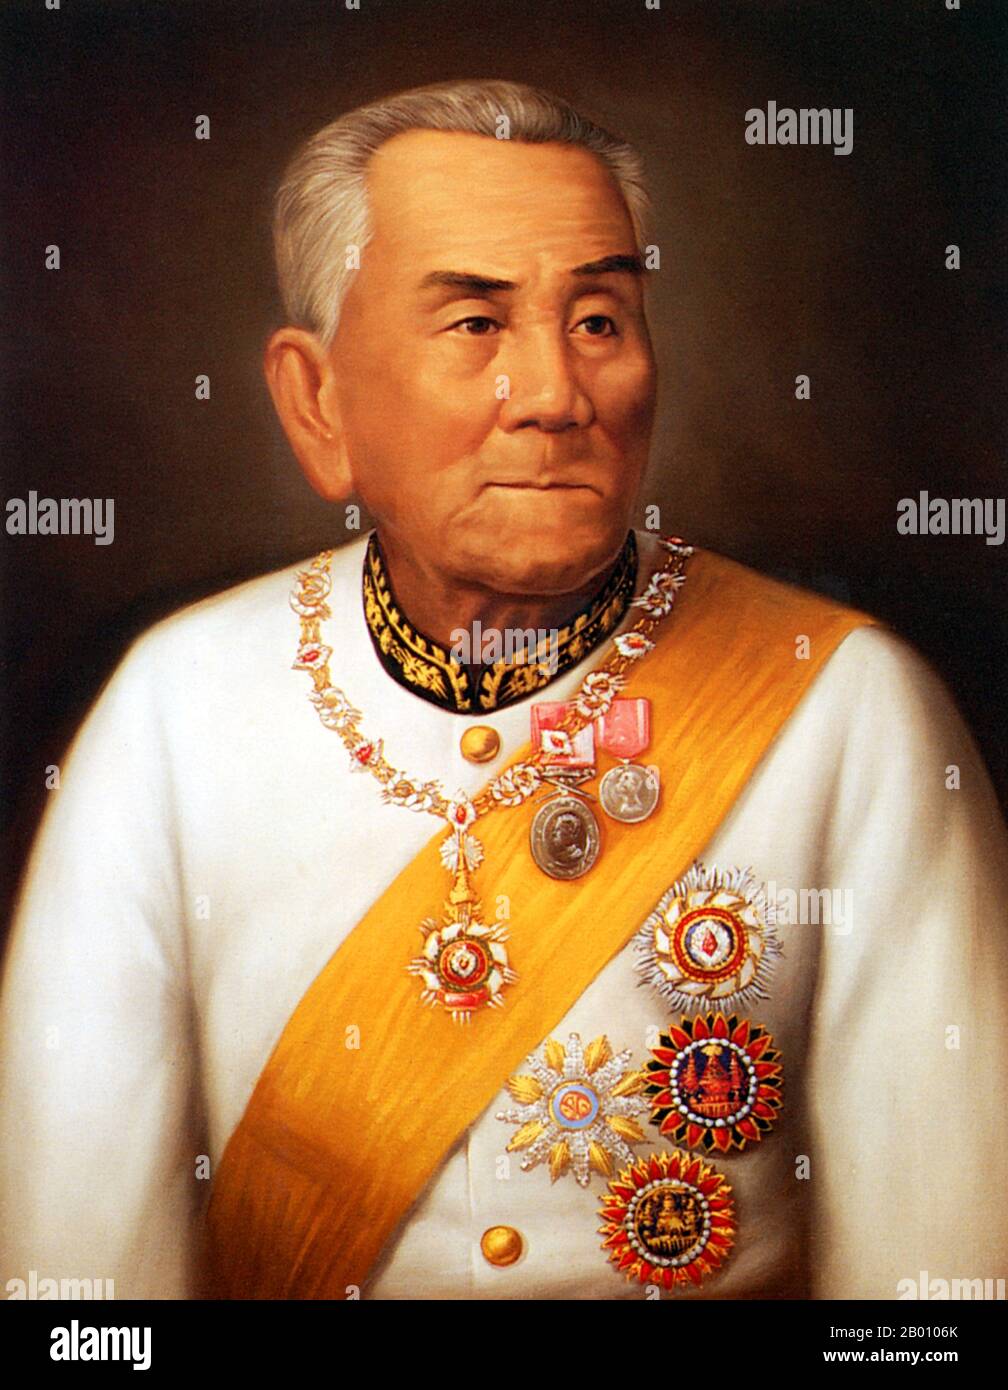 Thailand: Inthanon, Chao (König) von Chiang Mai, 1871-1897. Siebte herr der Chao Chet Ton Dynastie. Ein Spross der Chao Chet Ton Dynastie, der Chiang Mai und das ehemalige Königreich Lan Na als Nebenfluss der Siam Chakri Dynastie in Bangkok von 1775 bis 1939 regierte. Stockfoto